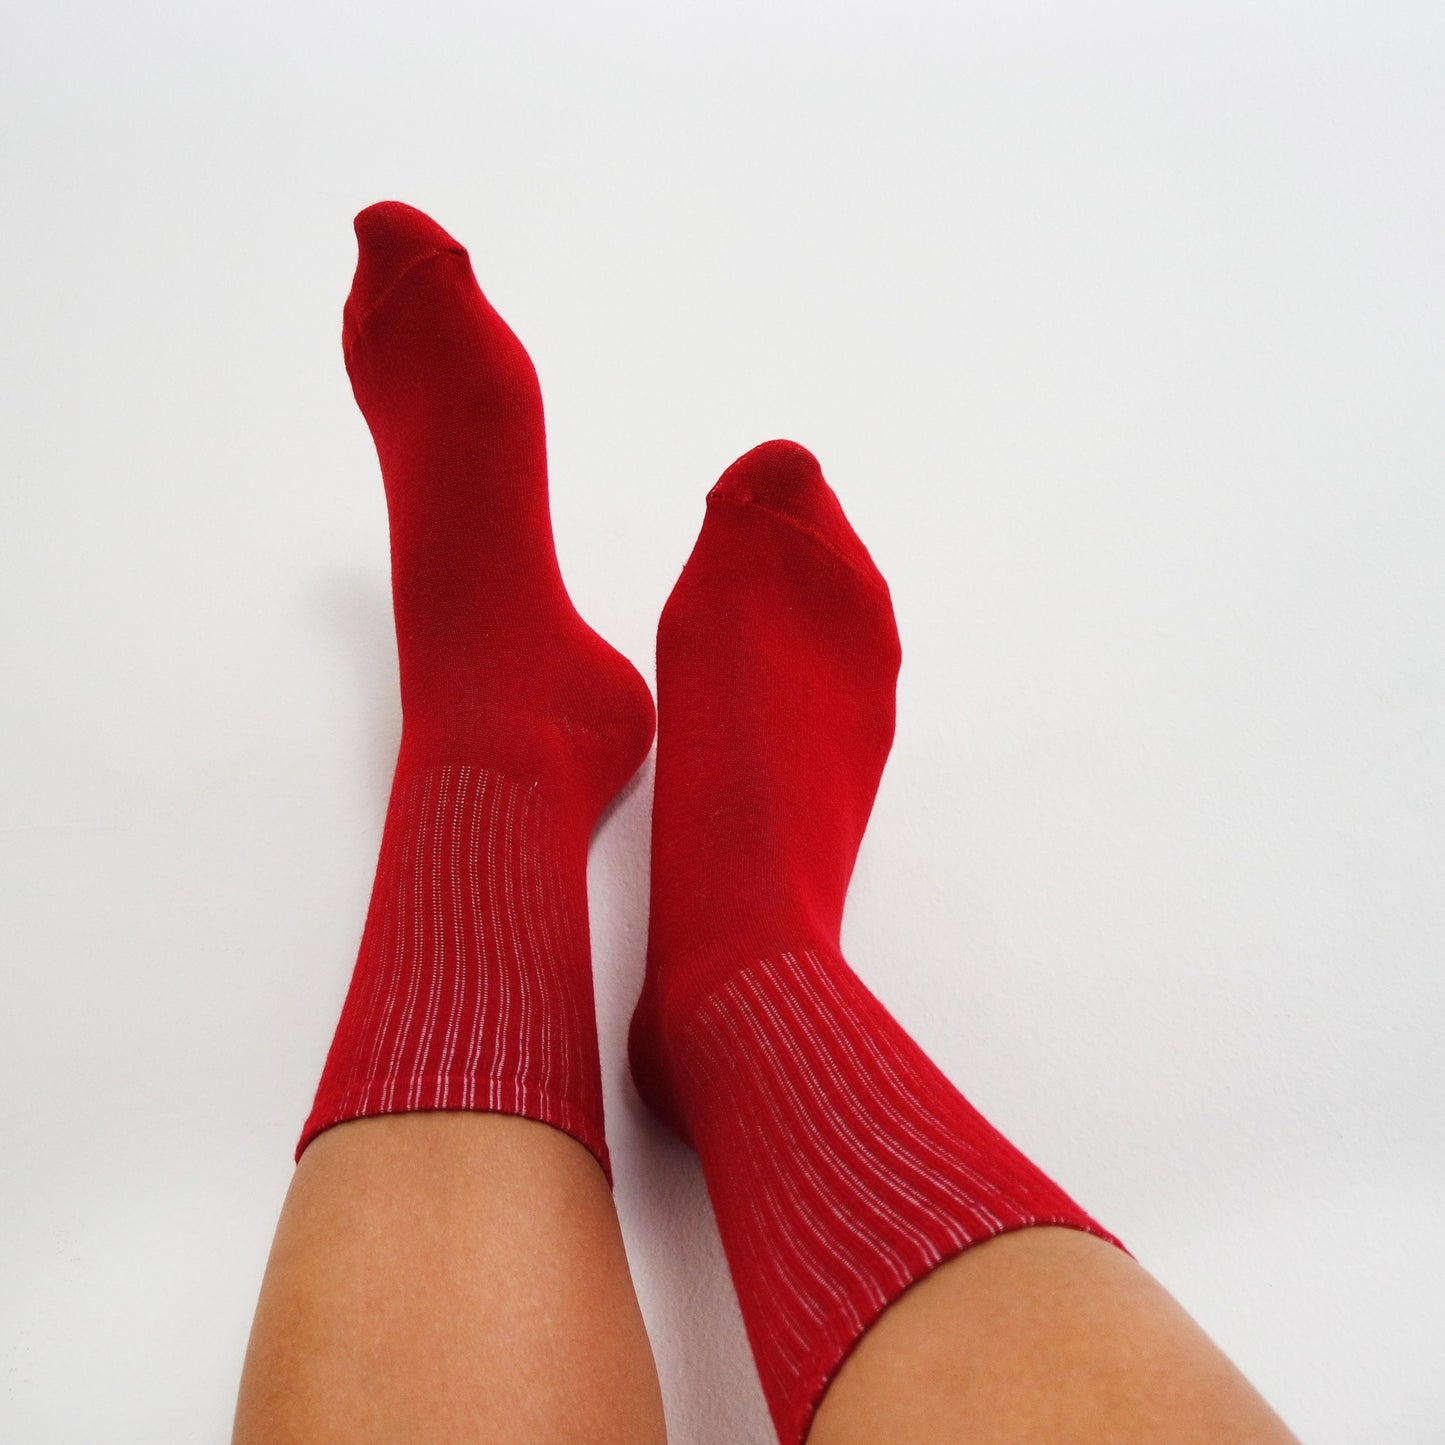 Women's Red Socks, Sport Socks, Christmas Socks, Stocking Stuffers, Dress Socks For Heels, Valentine's Day Gift Idea, Solid Basic Socks